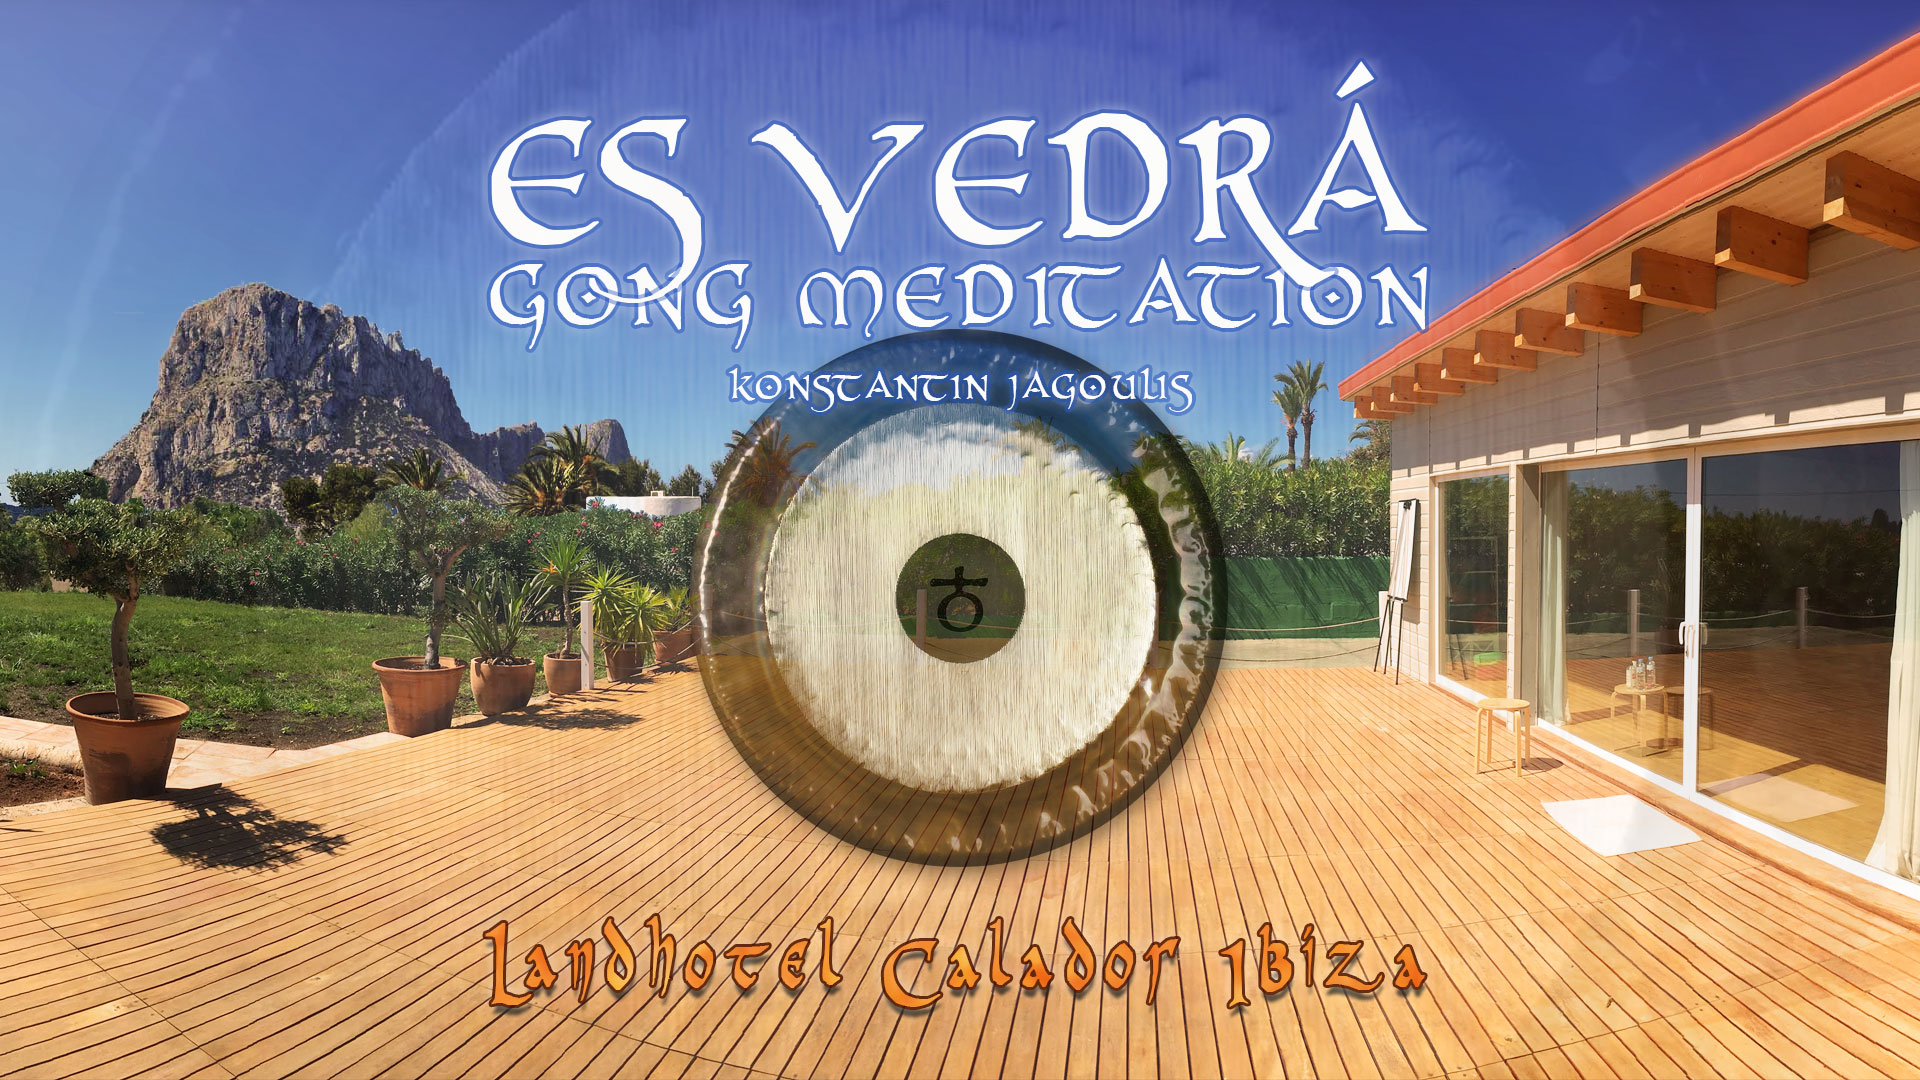 Es Vedrá Gong Meditation at Landhotel Calador Ibiza